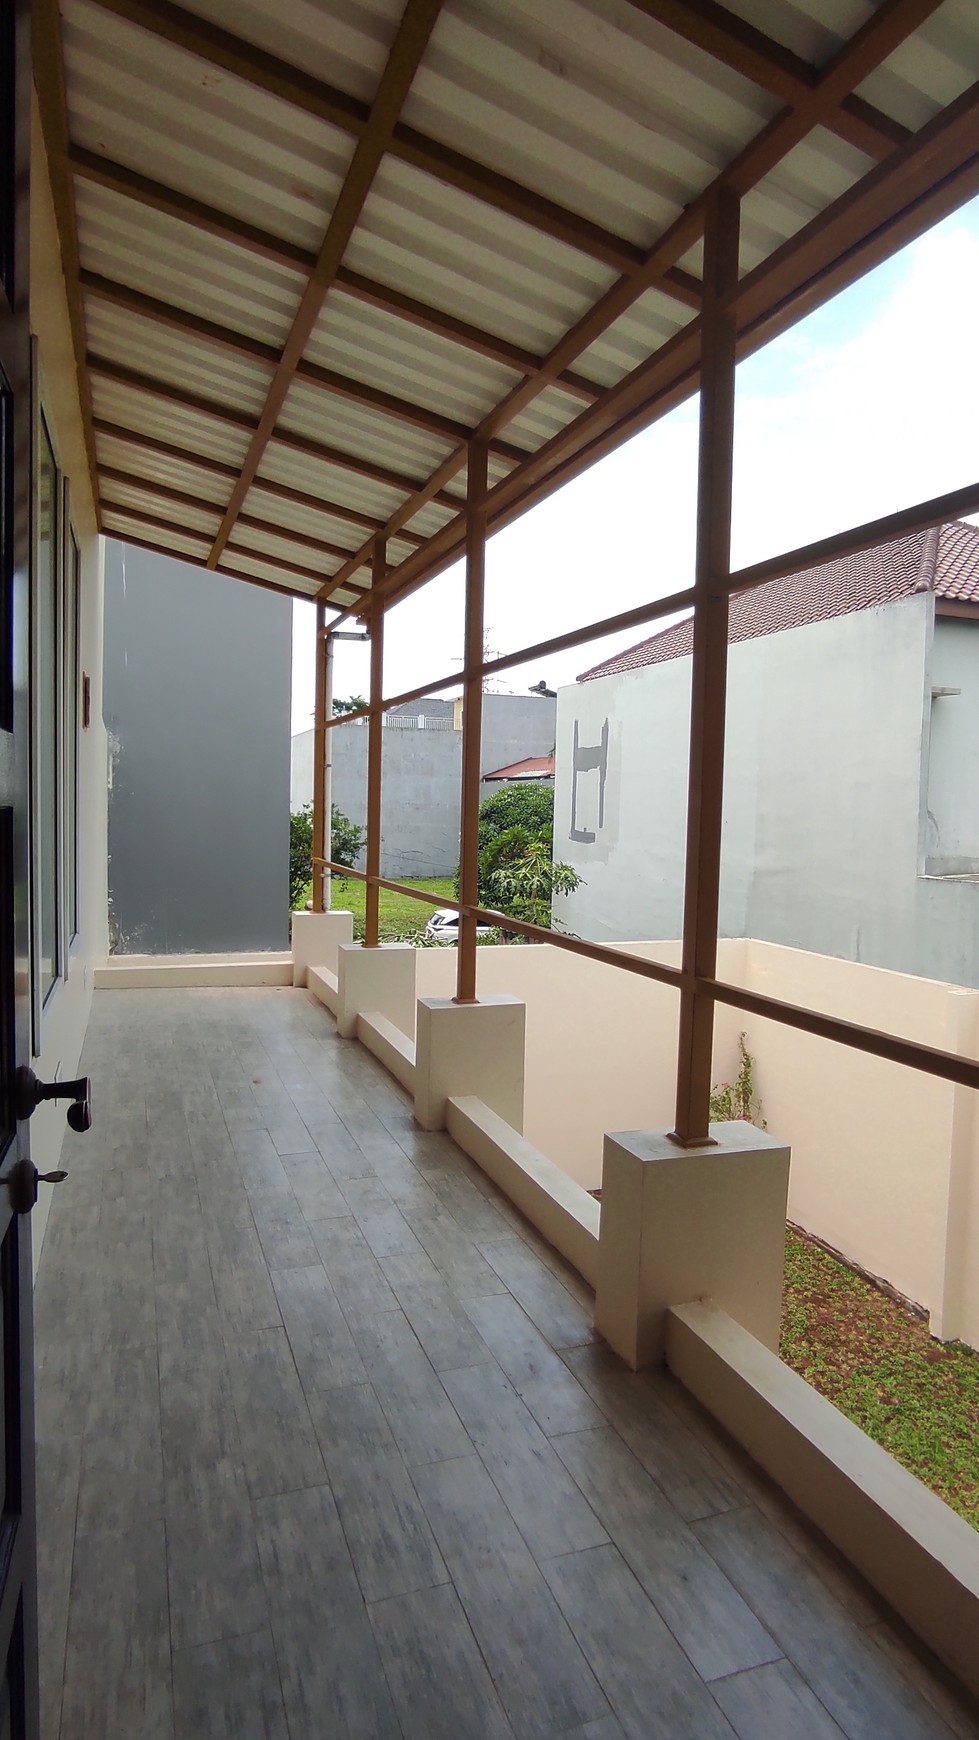 Dijual Rumah Cantik Siap Huni 2 lantai di Grand Wisata, Bekasi